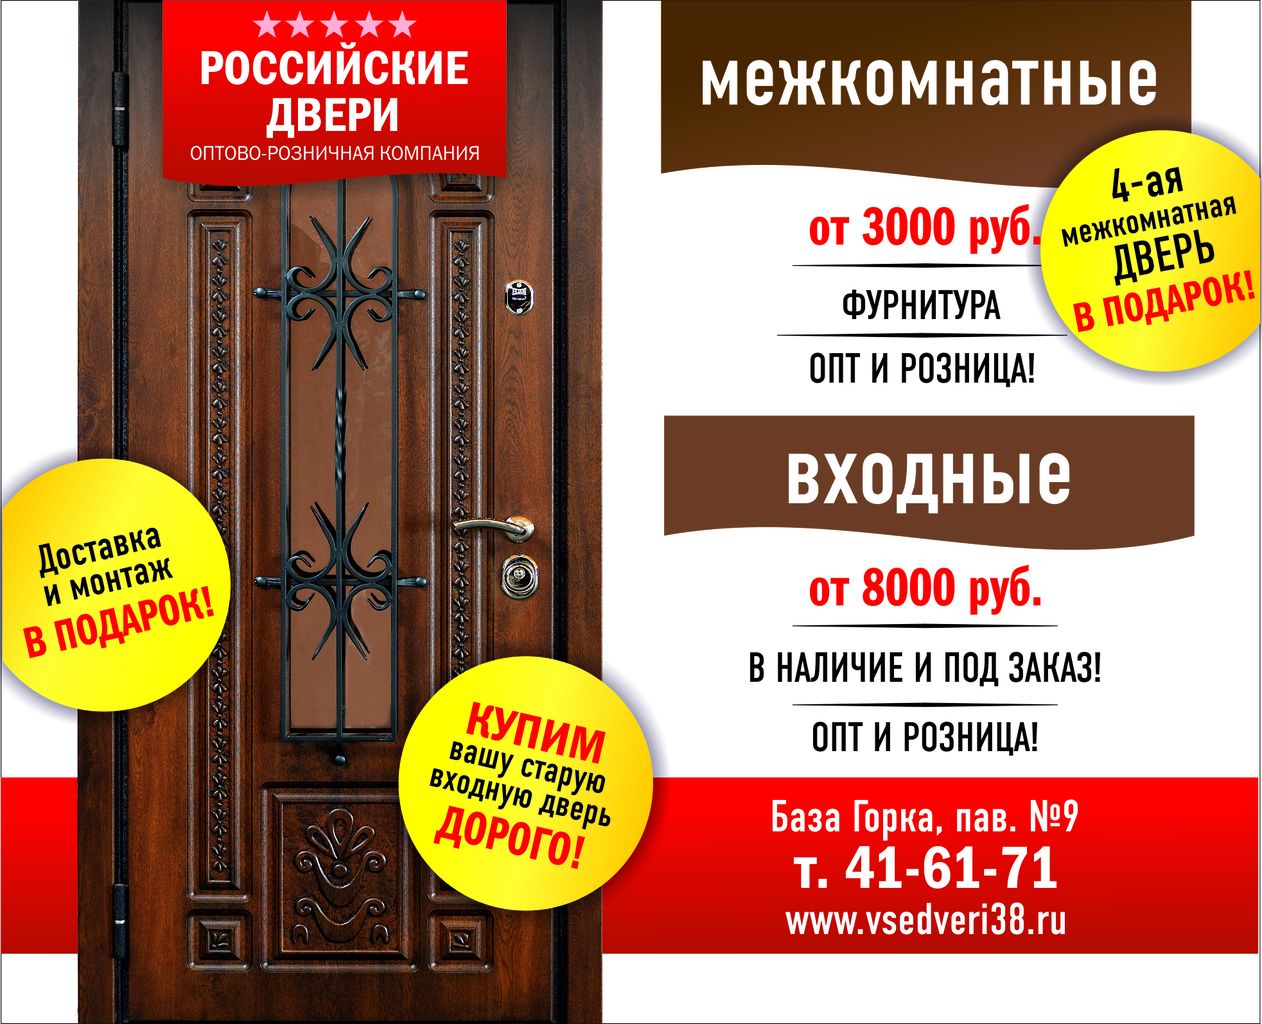 Двери иркутск сайт. Российские двери. Реклама двери входные и межкомнатные. Реклама дверей. Объявления производства дверей.